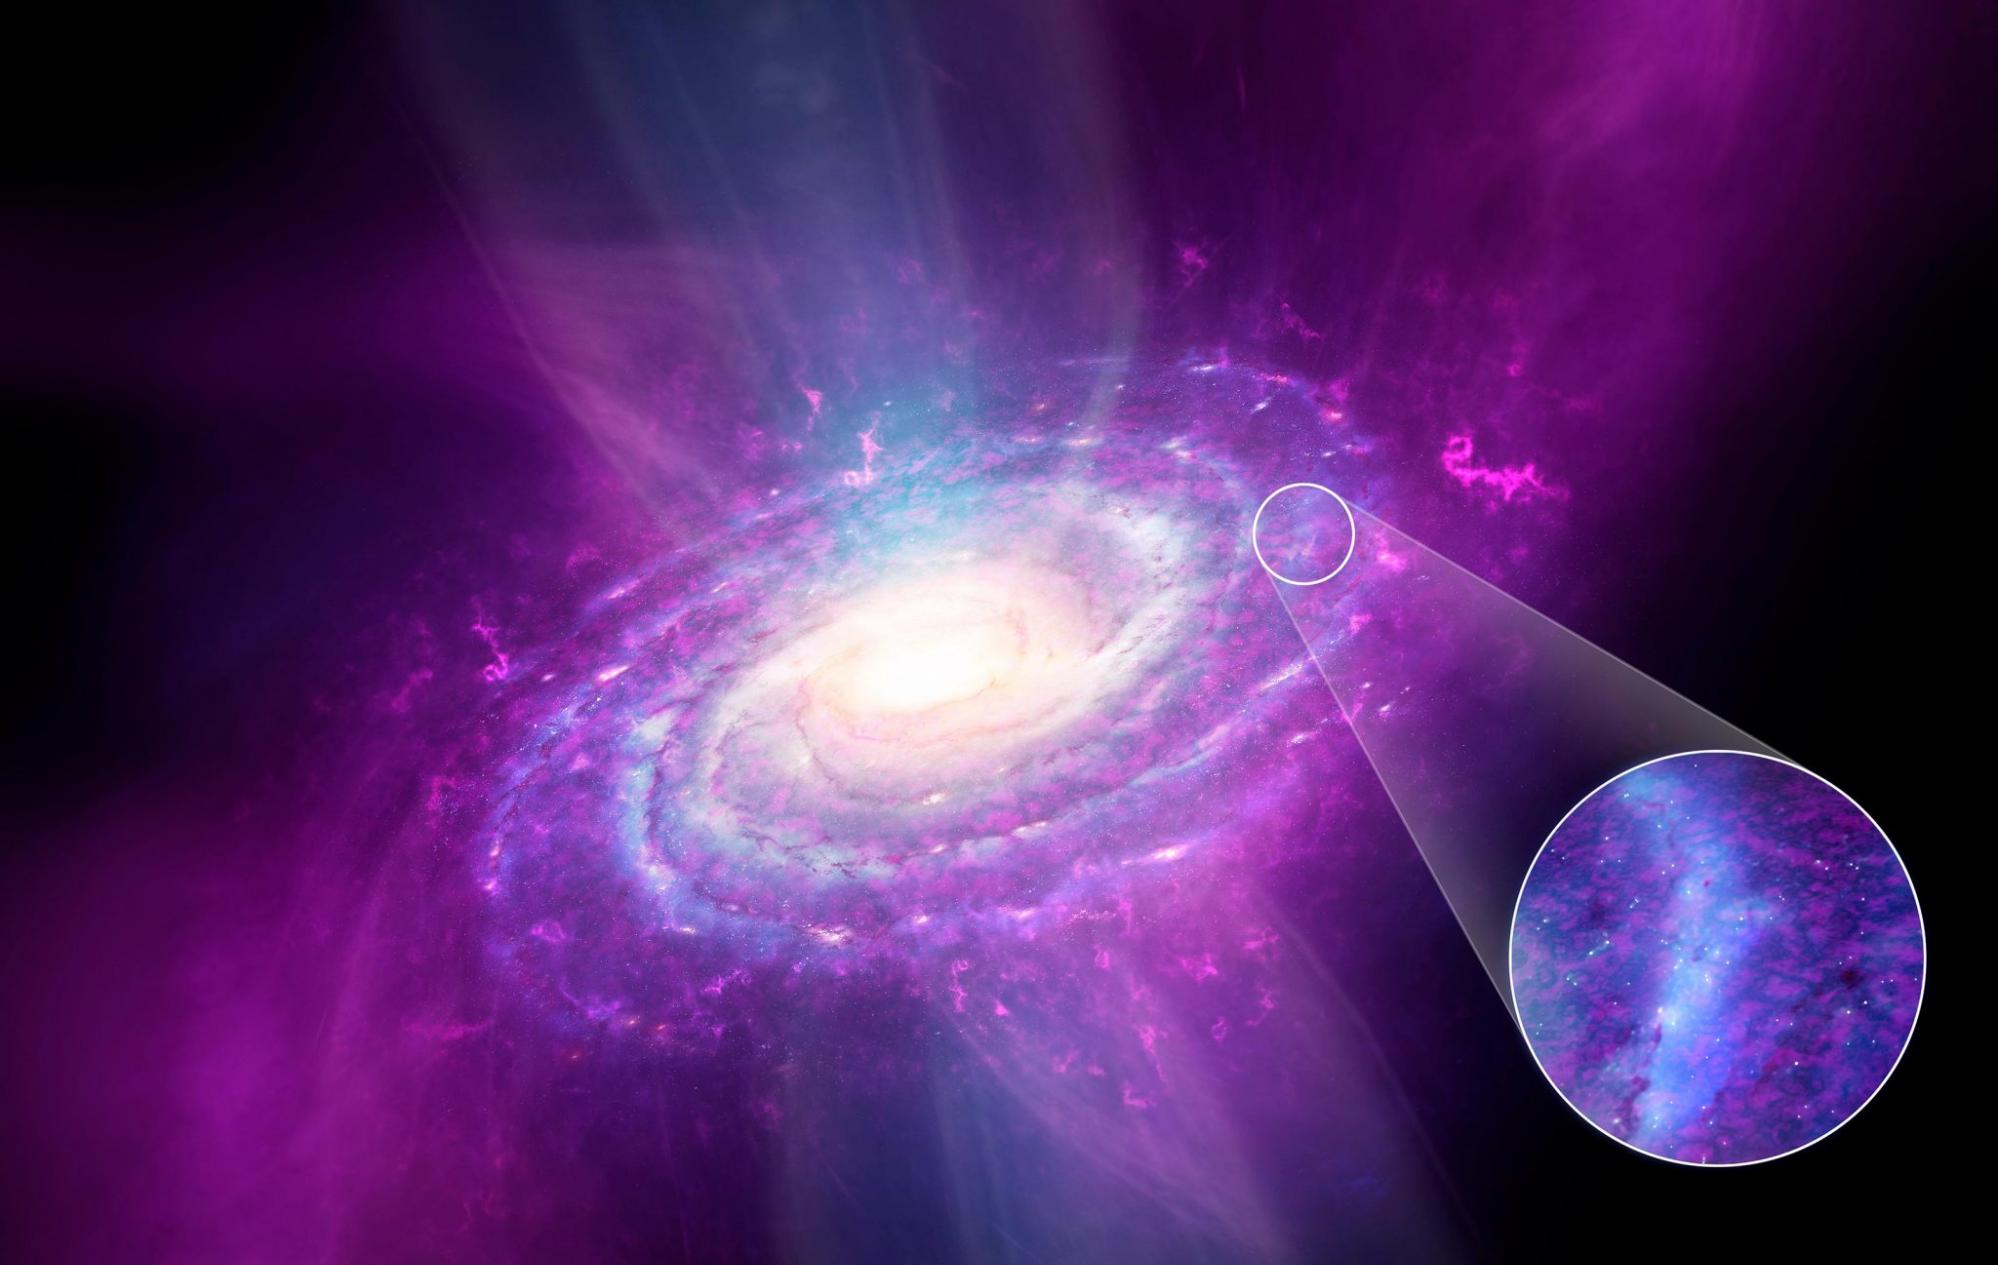 天文学家研究构成银河系的气体和金属组成